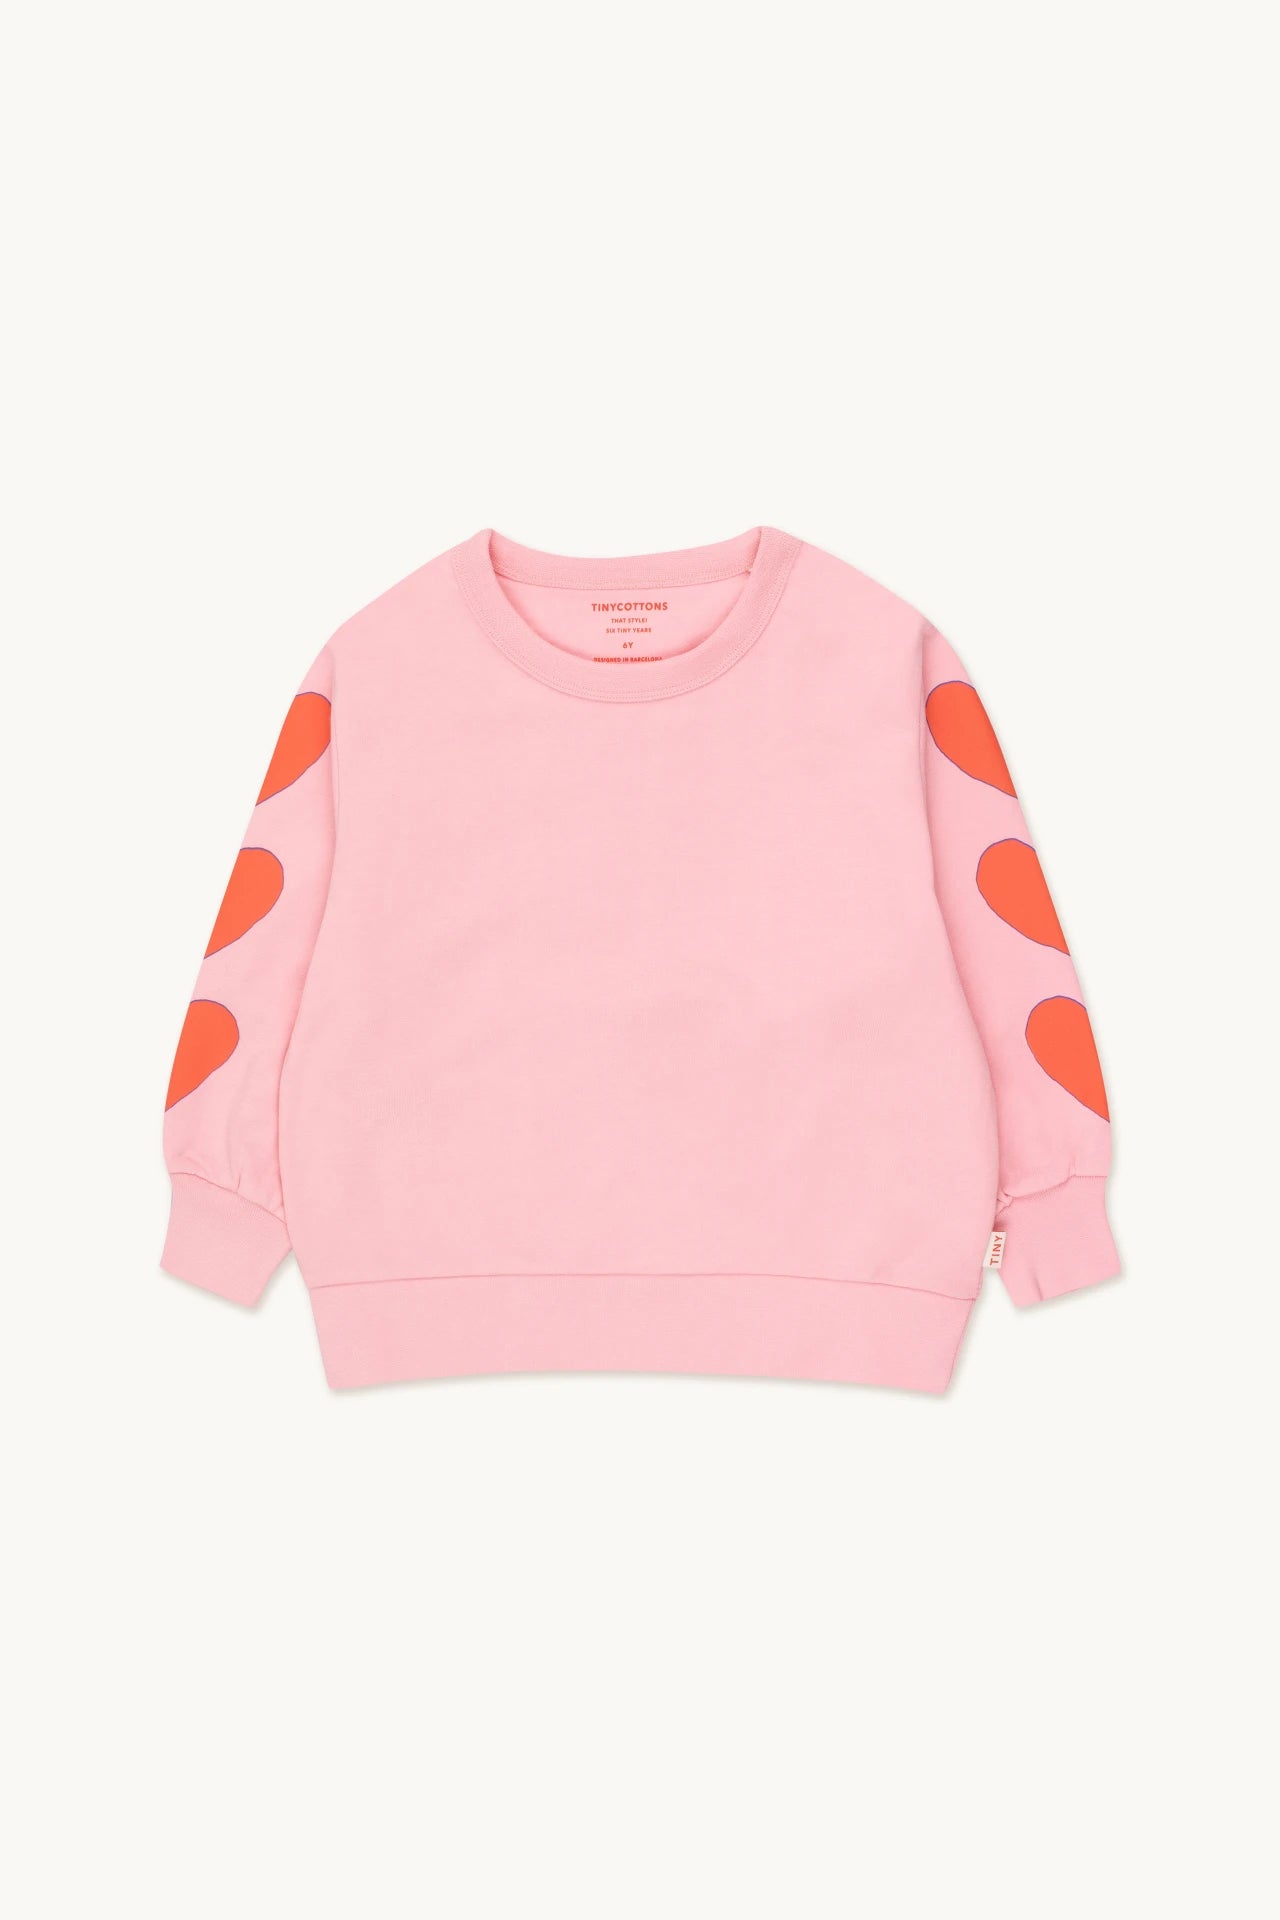 Tiny Cottons - Hearts Sweatshirt 